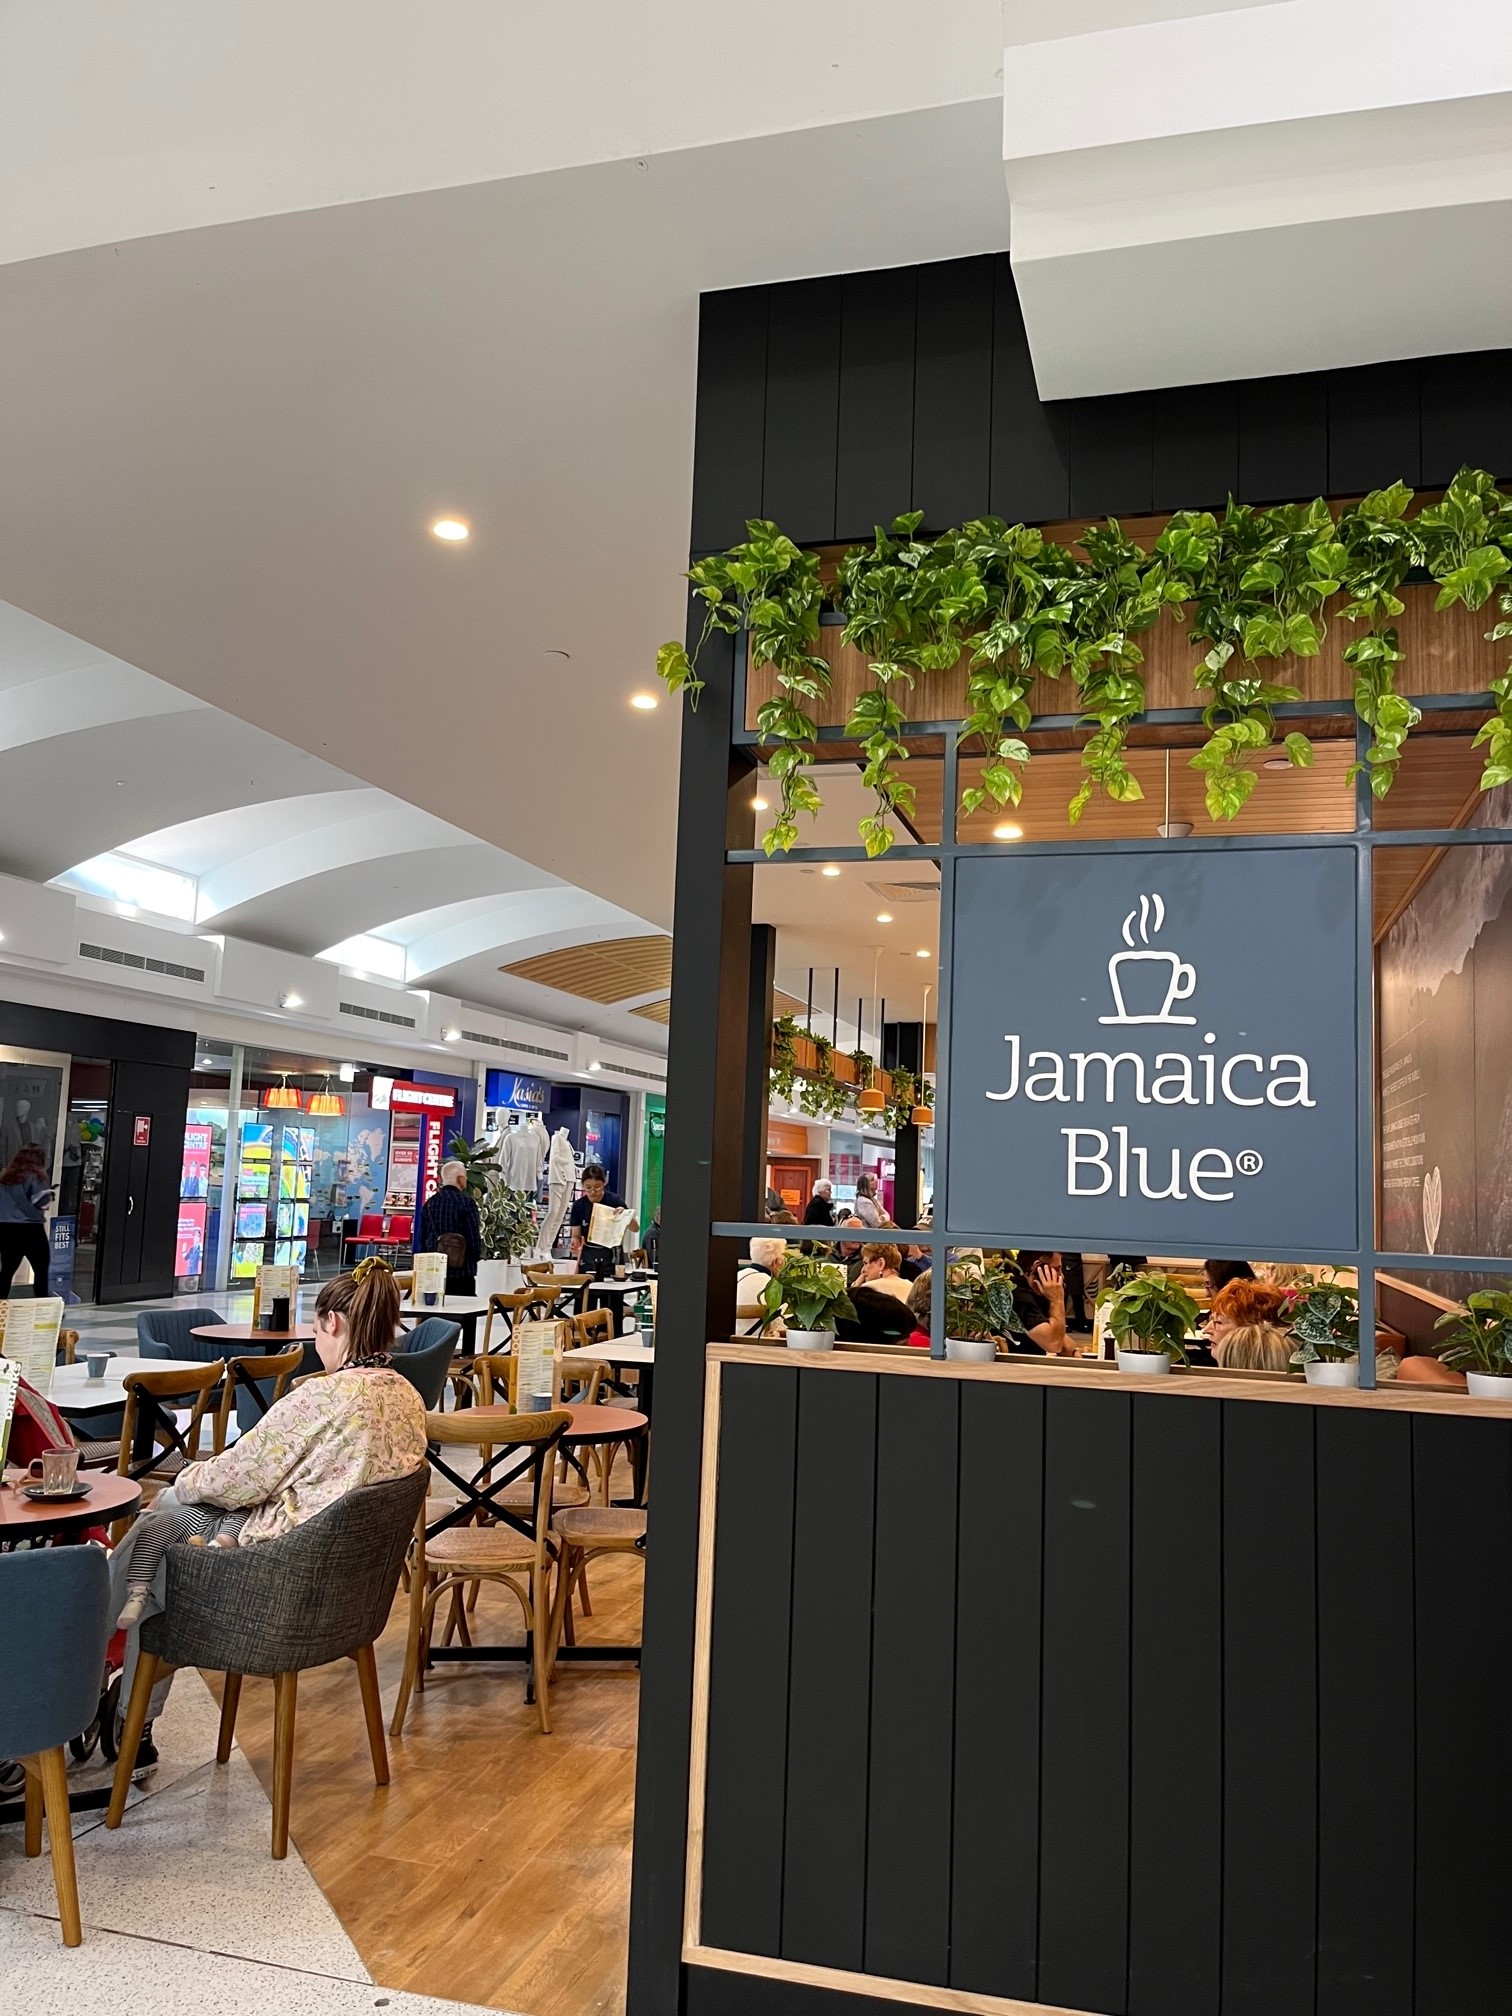 Jamaica Blue opens its doors in Warwick Grove!